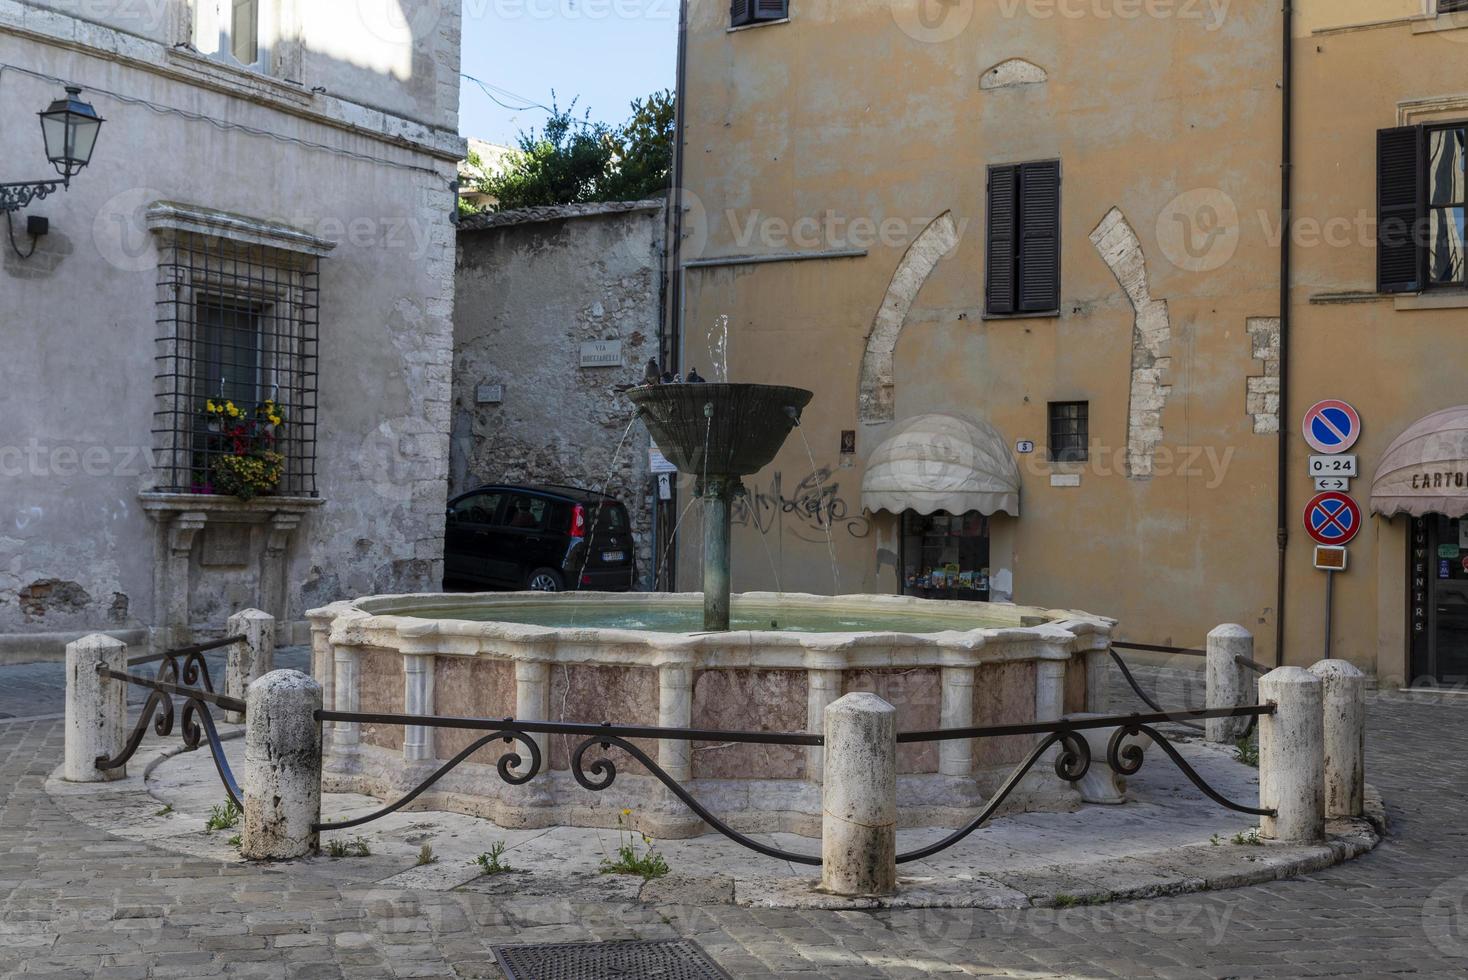 fuente en la plaza de priori en el centro de narni, italia, 2020 foto